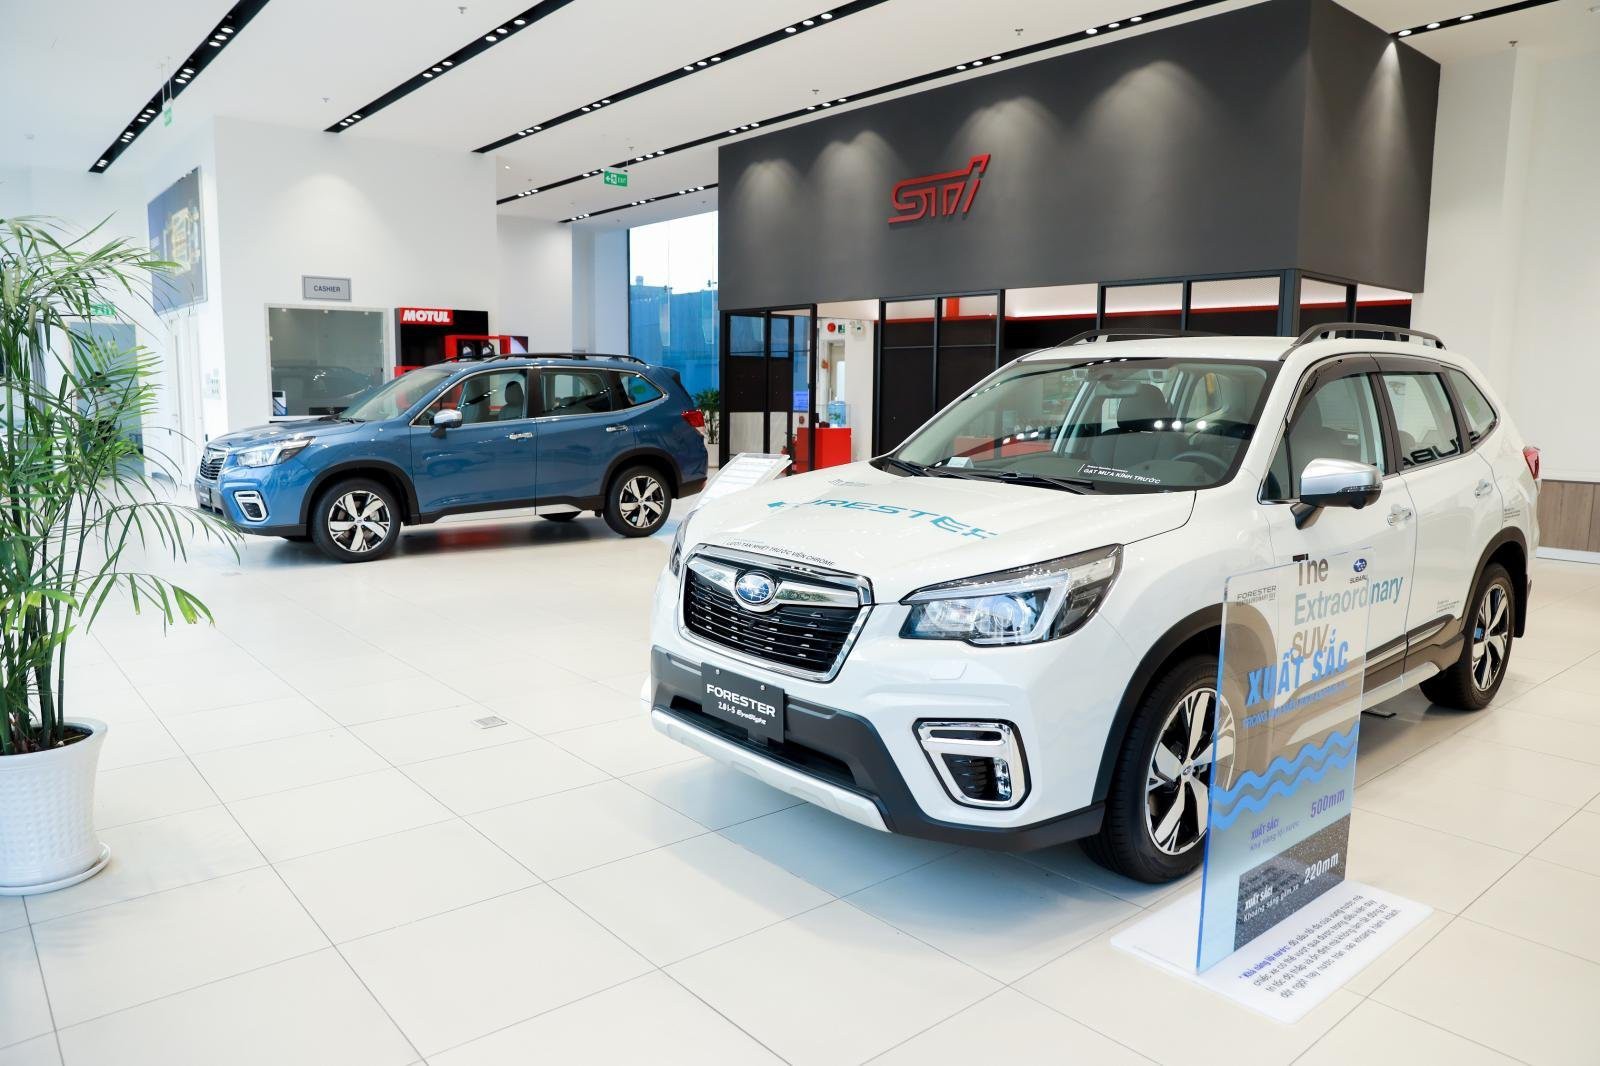 Mua Subaru Forester tháng 7, nhận ưu đãi tới hơn 250 triệu đồng